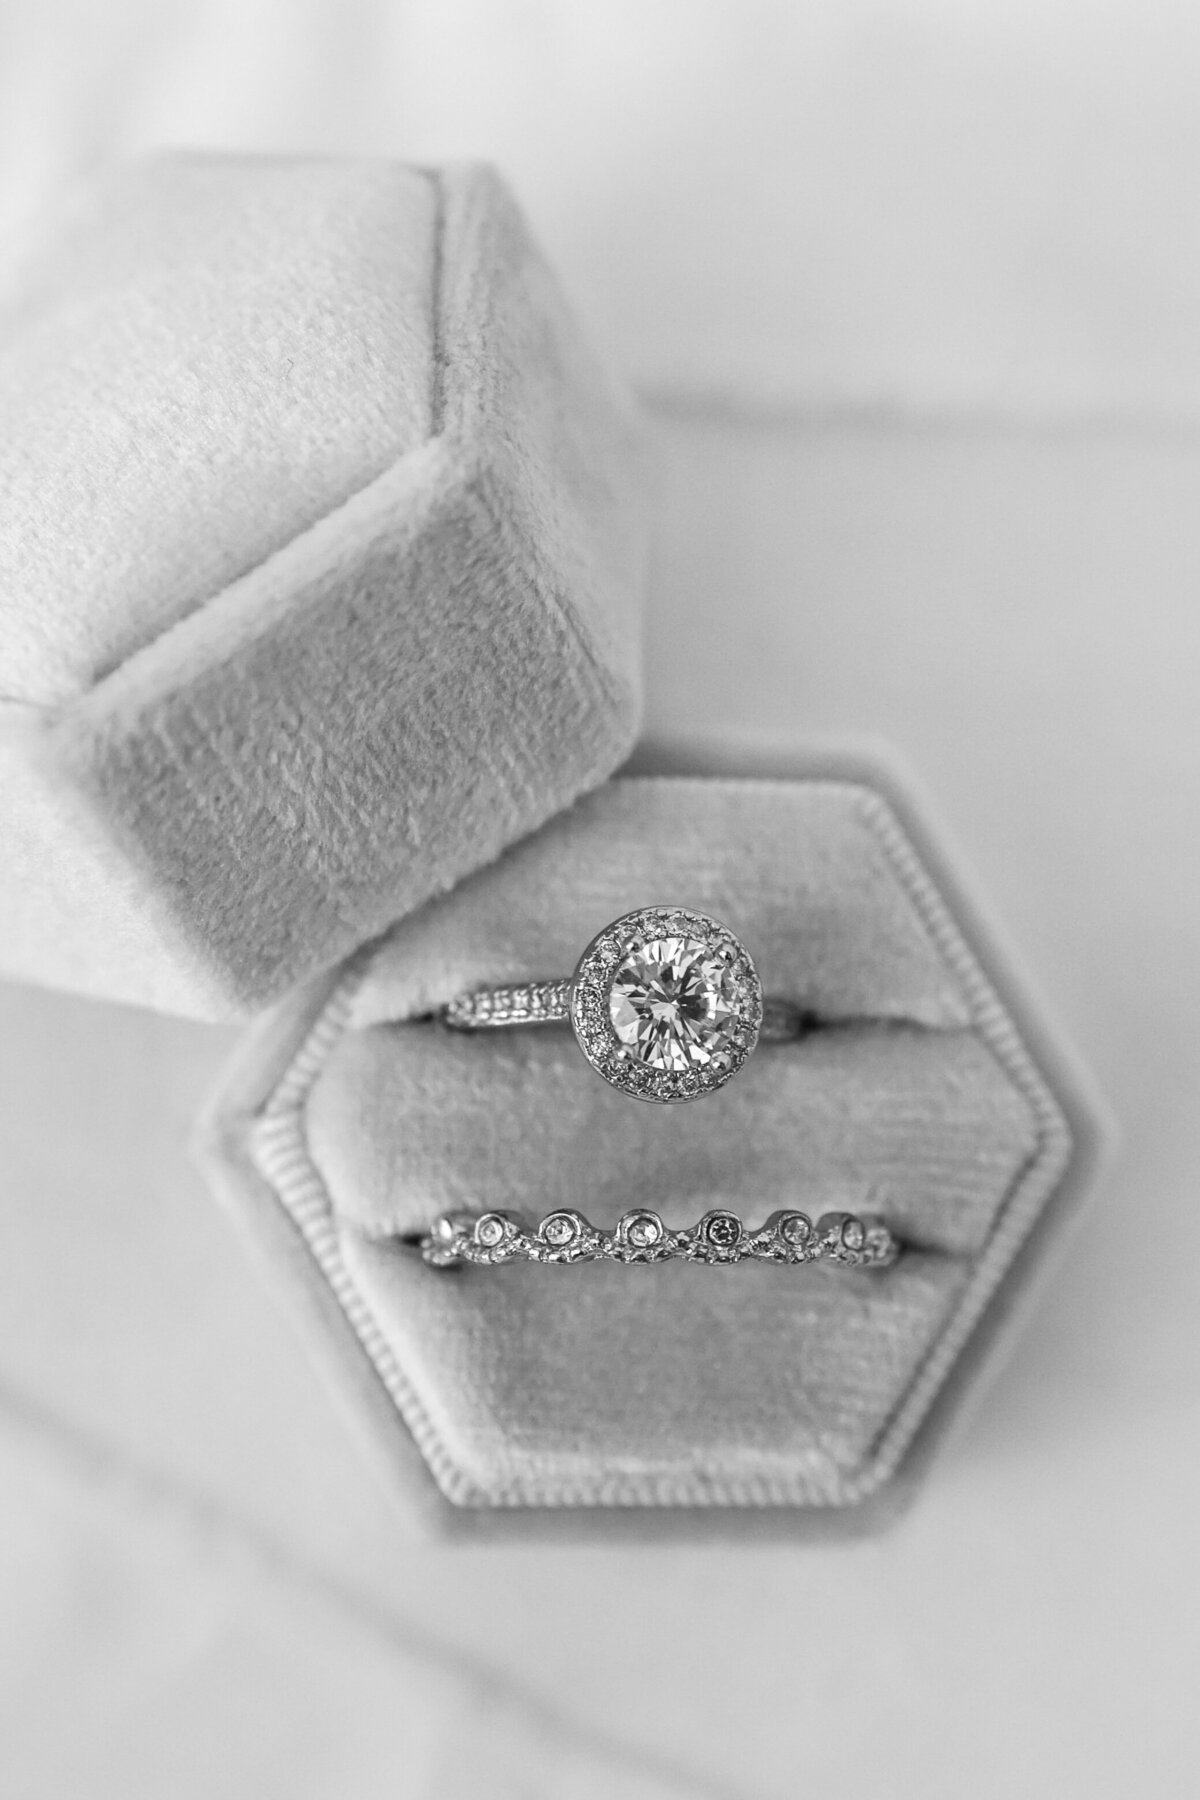 wedding rings in box by Orlando wedding photographer Amanda Richardson Photography